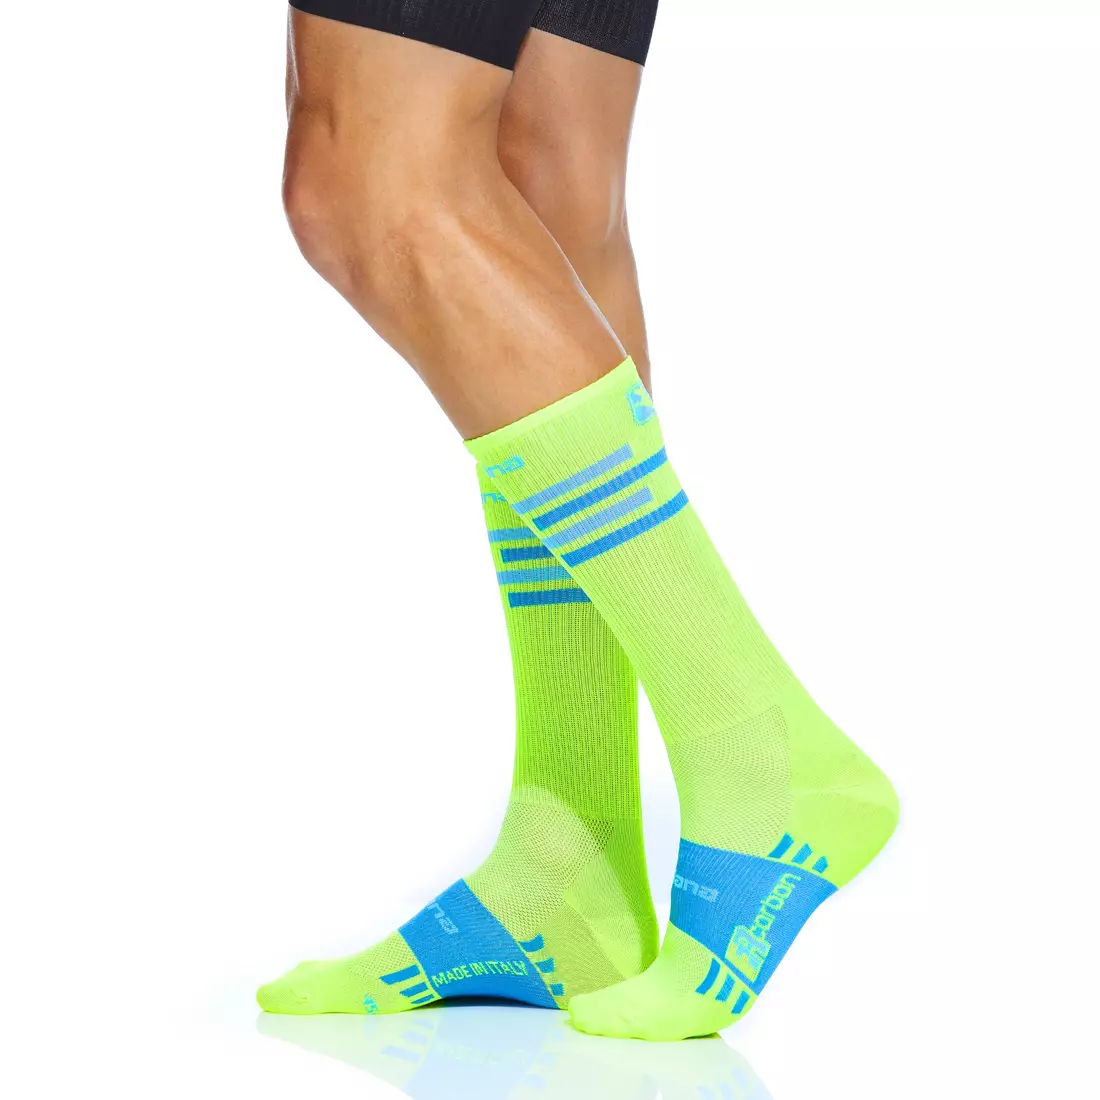 GIORDANA LINES fluoro cycling socks